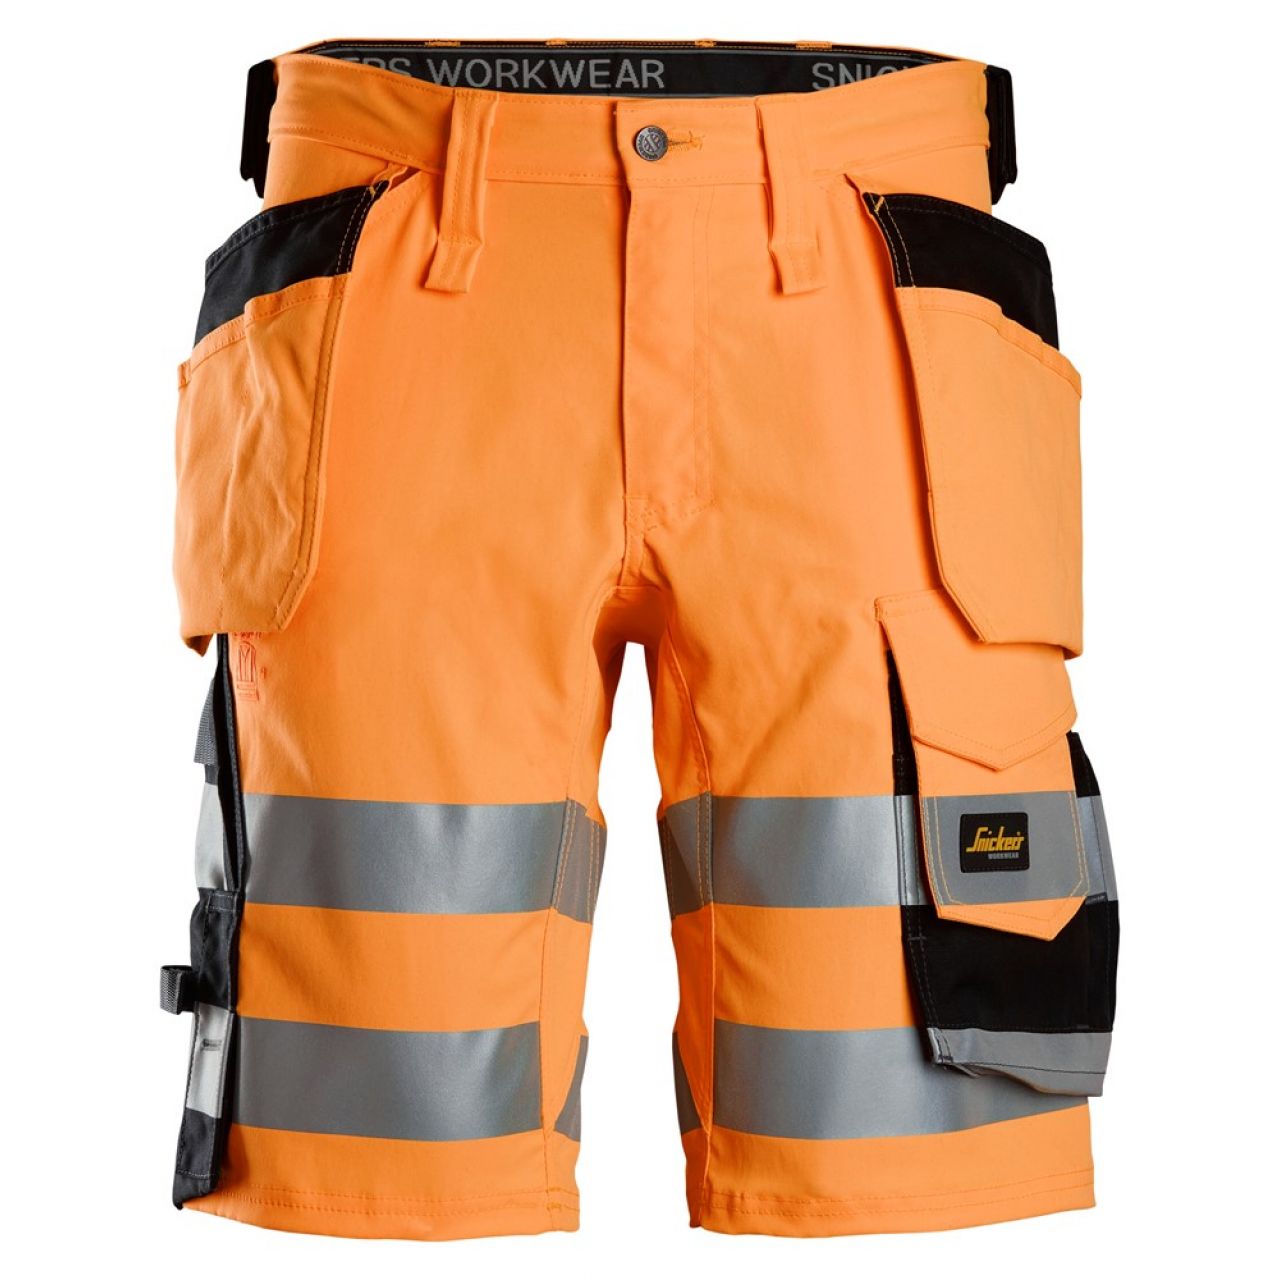 6135 Pantalones cortos de trabajo elásticos de alta visibilidad clase 1 con bolsillos flotantes naranja-negro talla 56